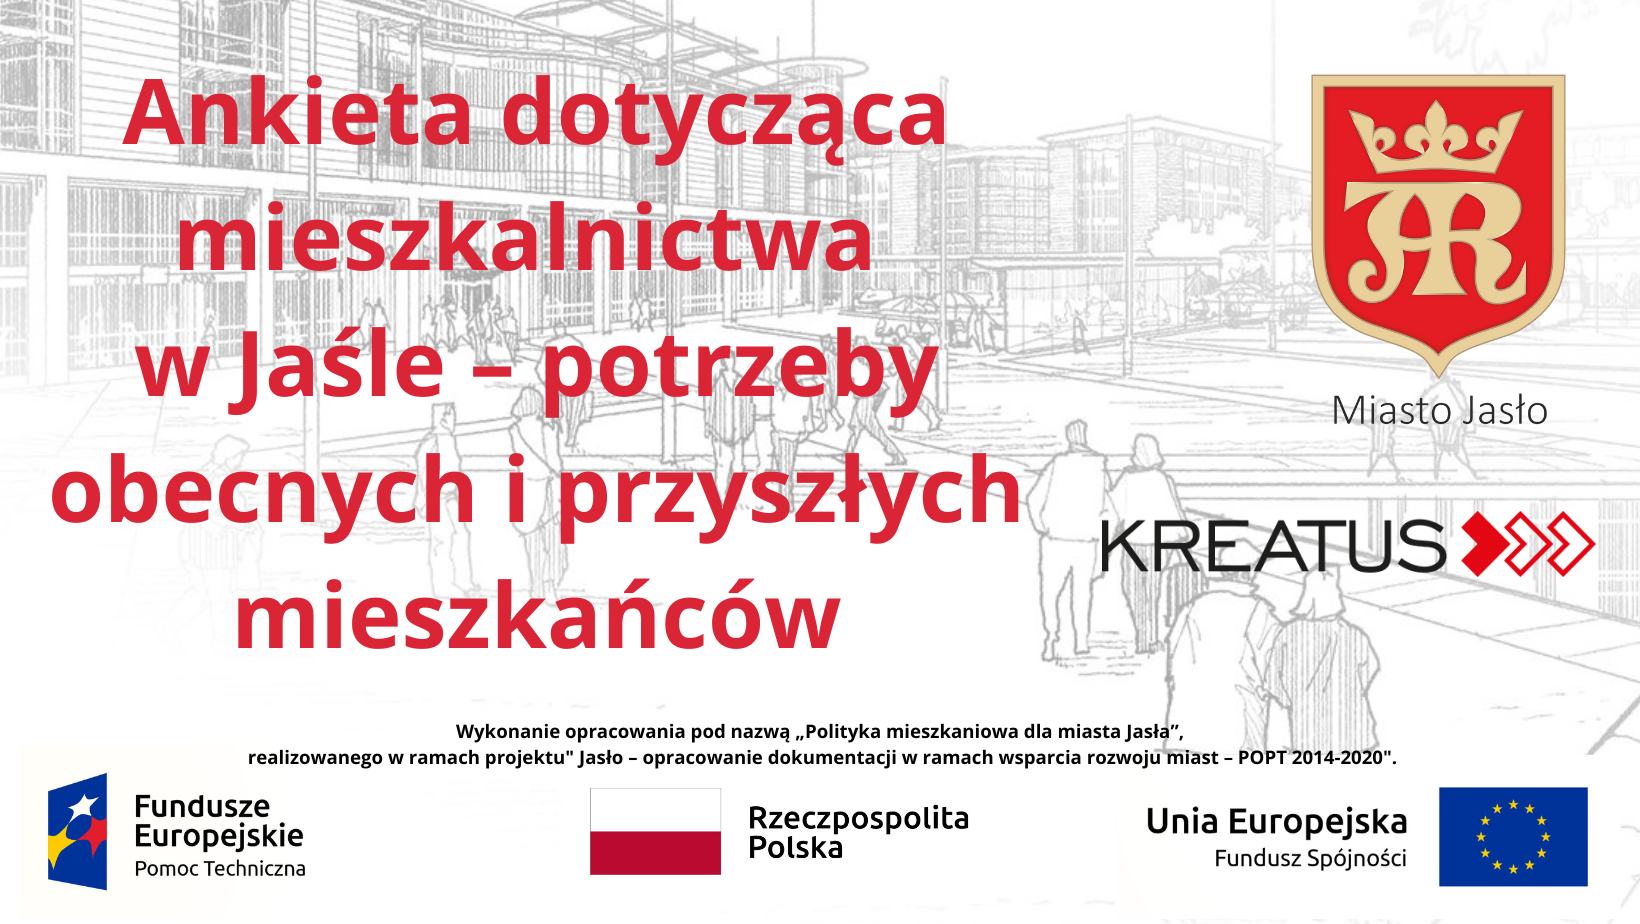 Grafika - Ankieta dotycząca mieszkalnictwa w Jaśle - potrzeby obecnych i przyszłych mieszkańców